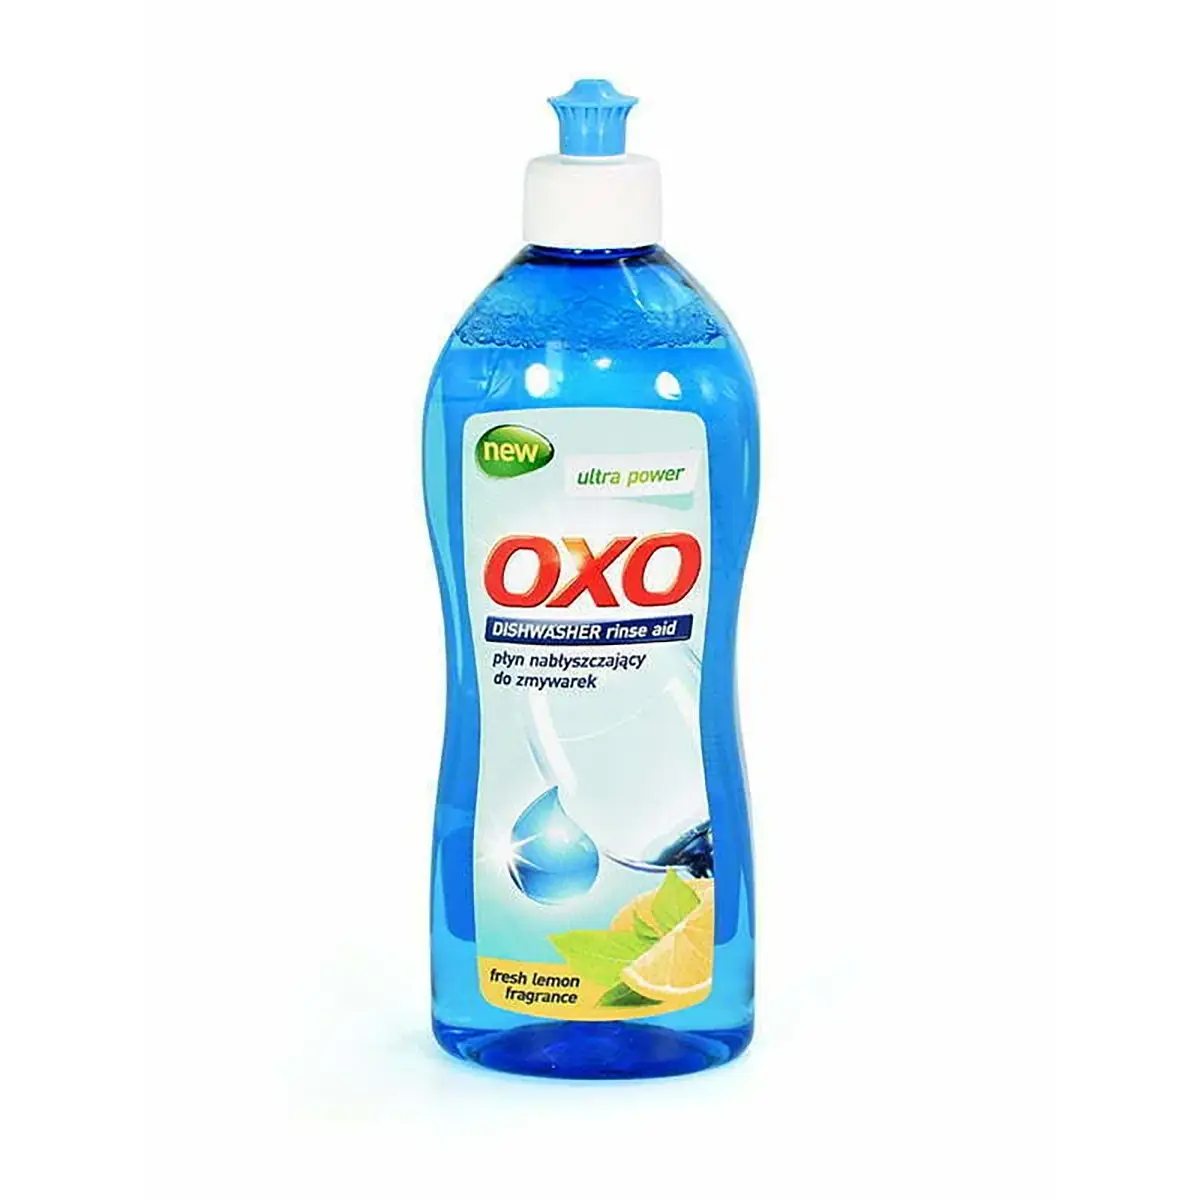 Płyn nabłyszczający do zmywarki - OXO 500 ml